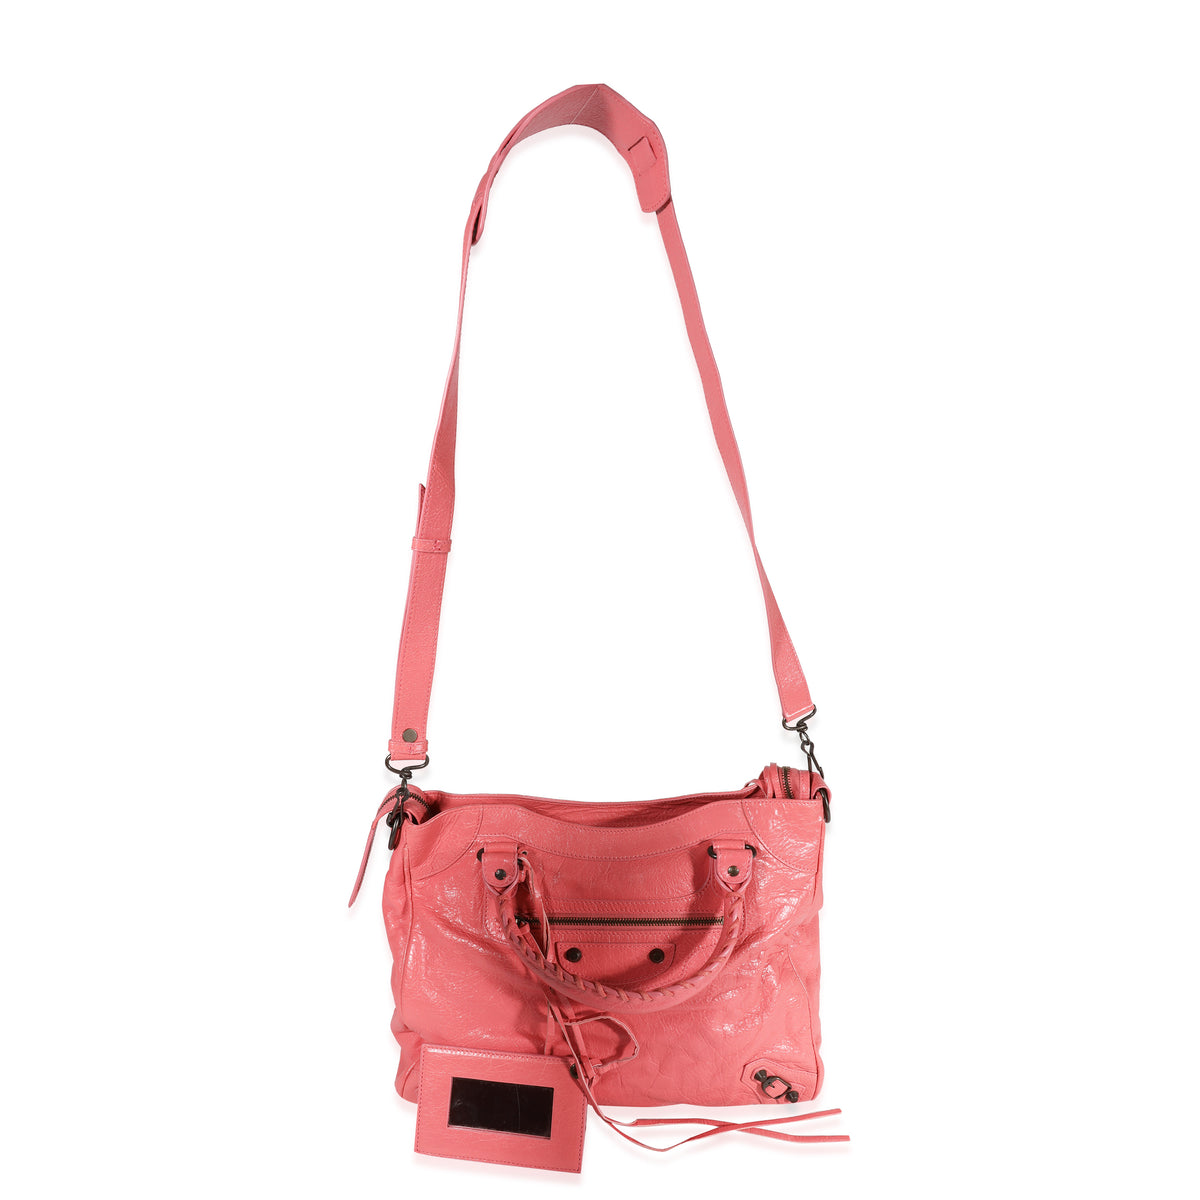 Peck Tyggegummi Lykkelig Balenciaga Rose Jaipur Arena Leather Classic Velo Bag | myGemma | Item  #122162